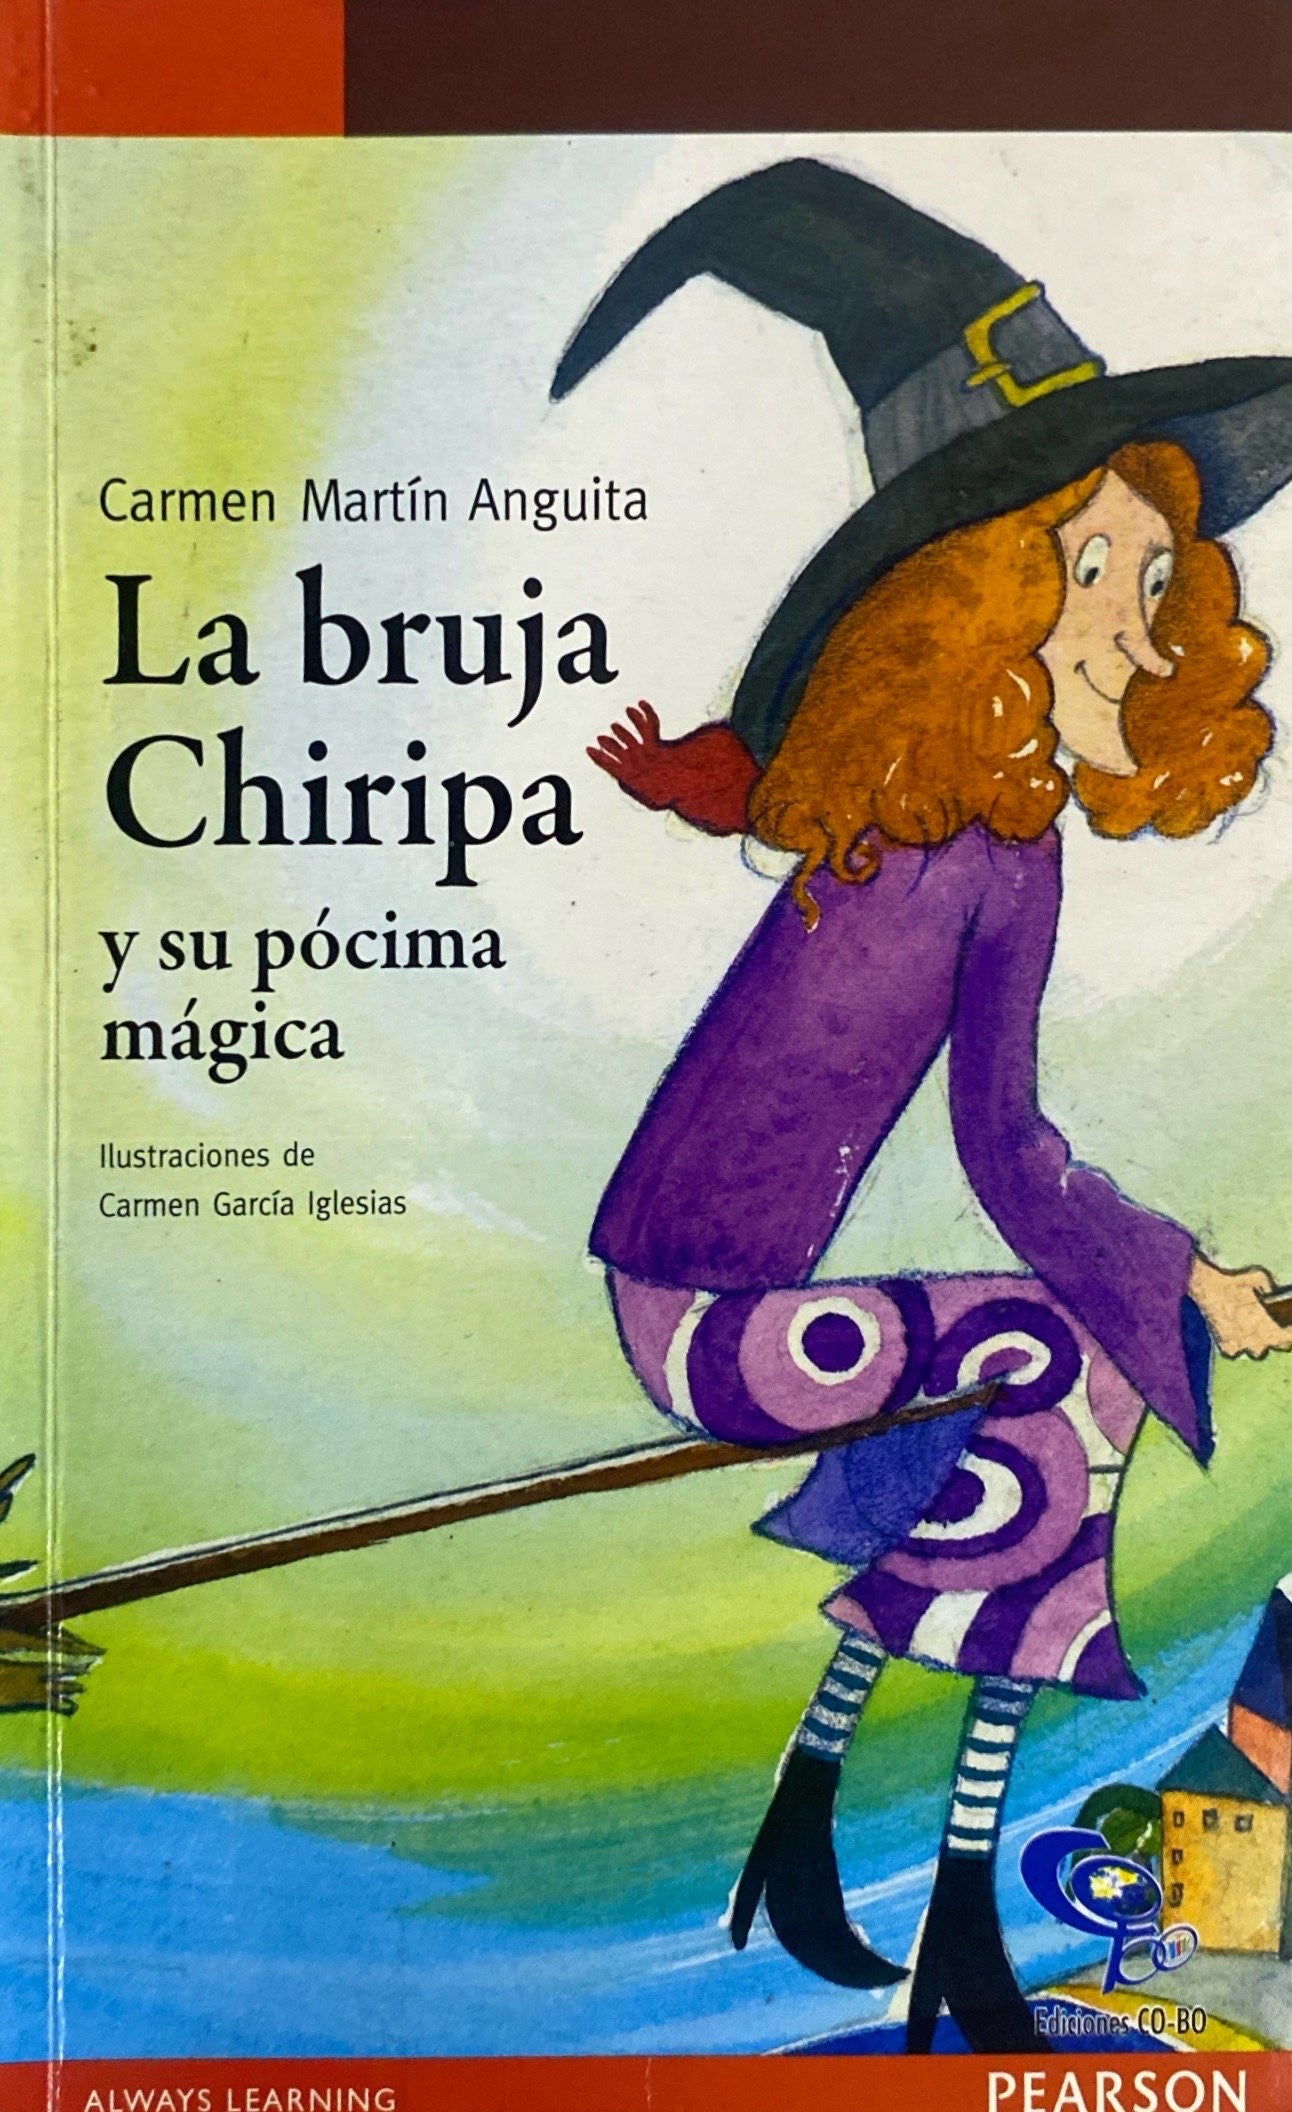 La bruja chiripa | Carmen Martín Anguita